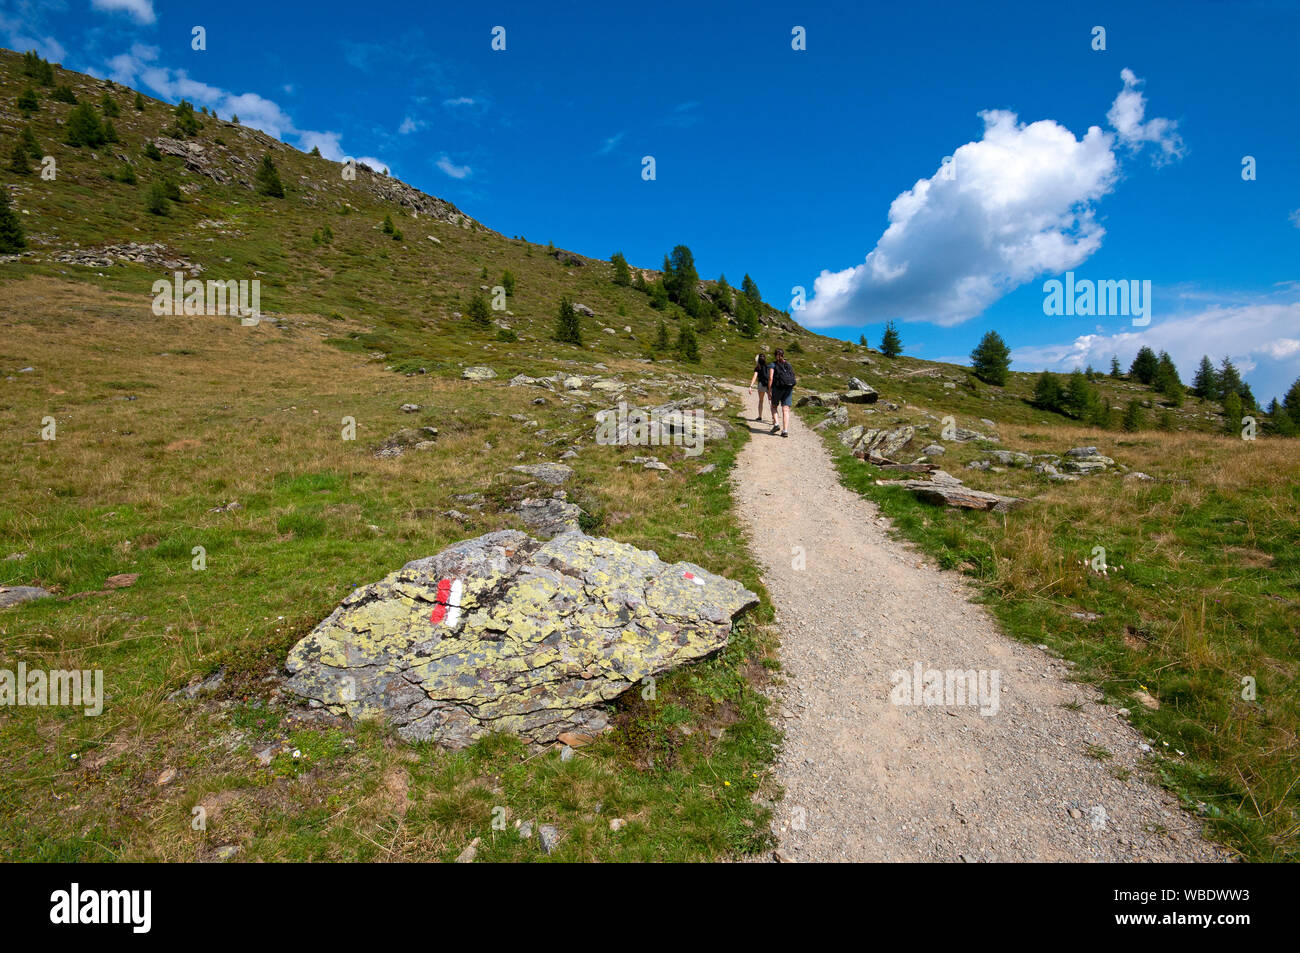 Hiking along the panoramic path in Schwemmalm area, Val d'Ultimo (Ultental), Bolzano, Trentino Alto Adige, Italy Stock Photo